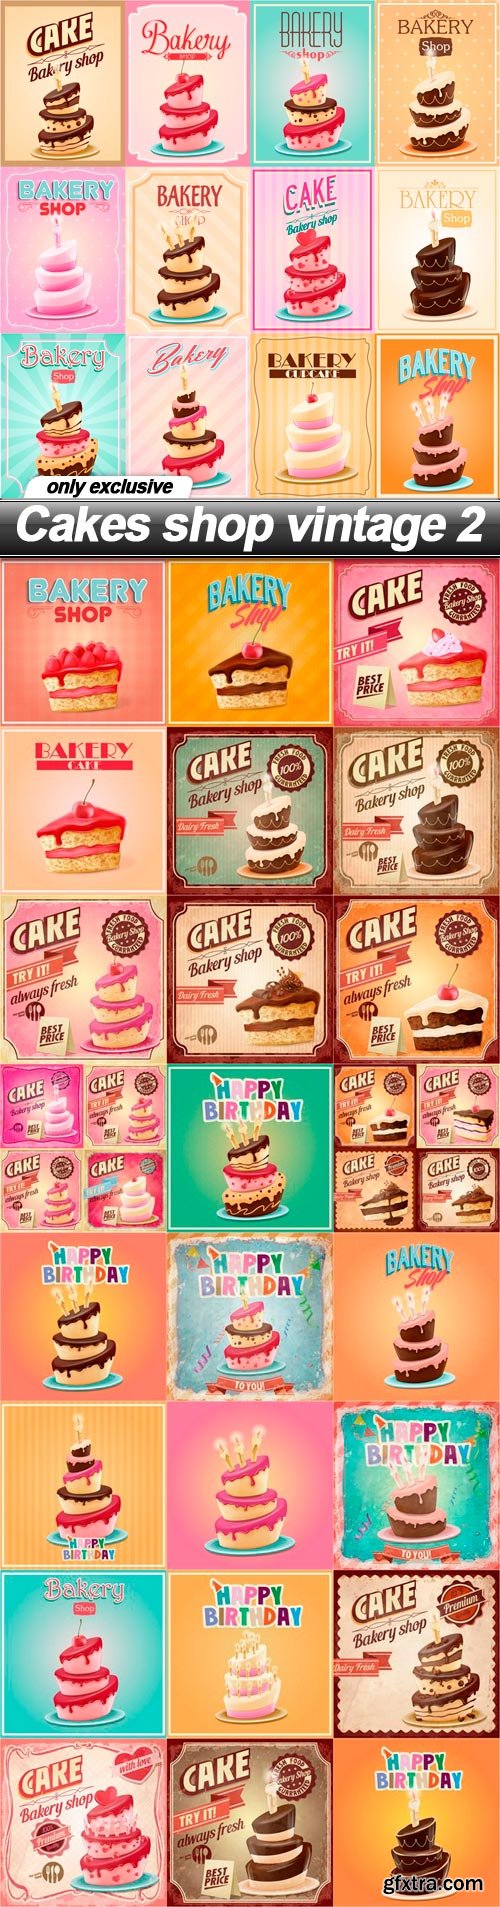 Cakes shop vintage 2 - 25 EPS